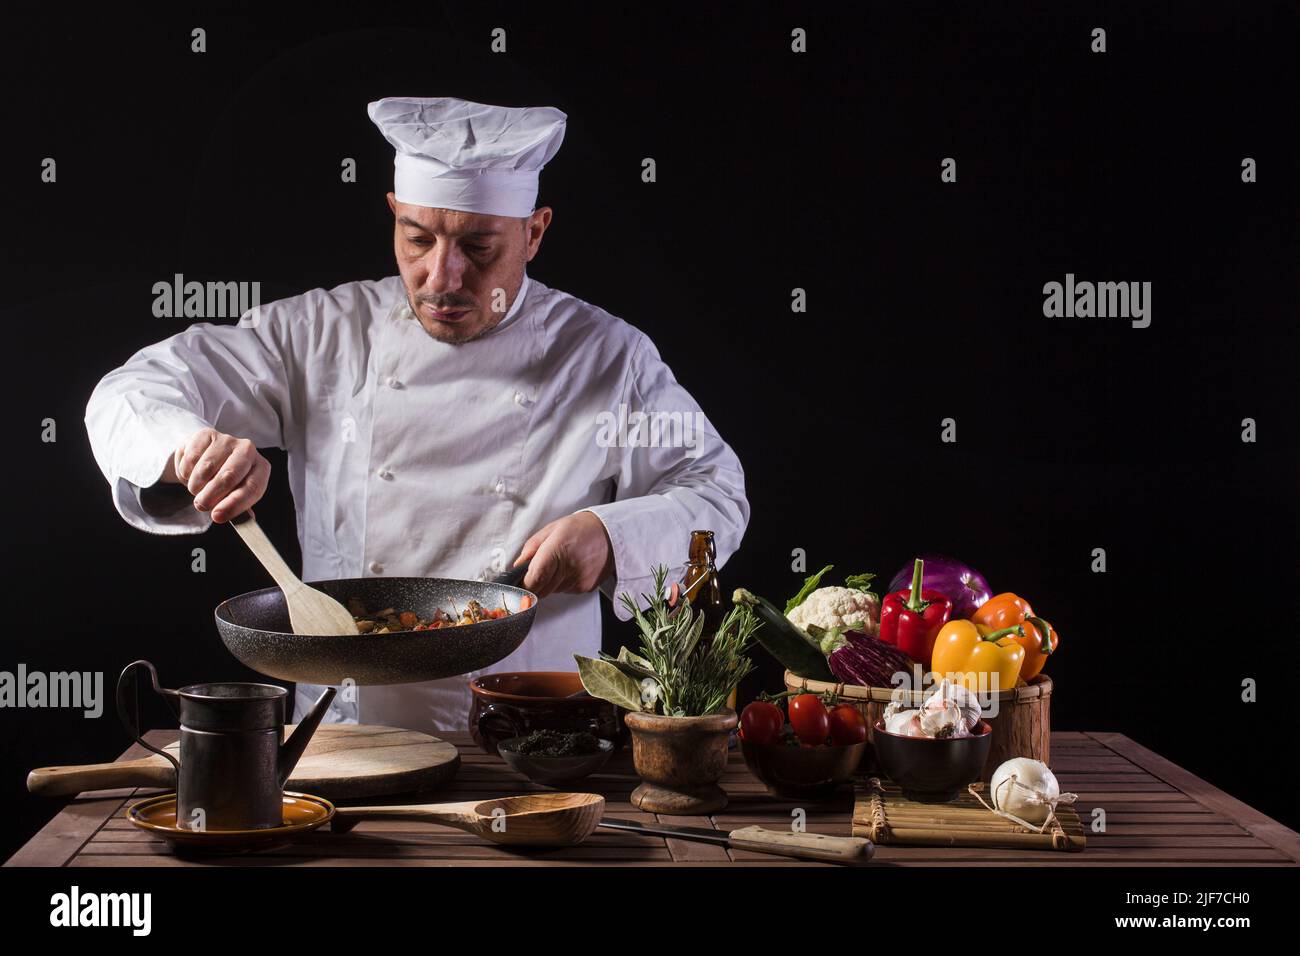 Chef con uniforme blanco y sombrero con cuchara mezcla los ingredientes en la sartén antes de servir mientras trabaja en la cocina de un restaurante Foto de stock